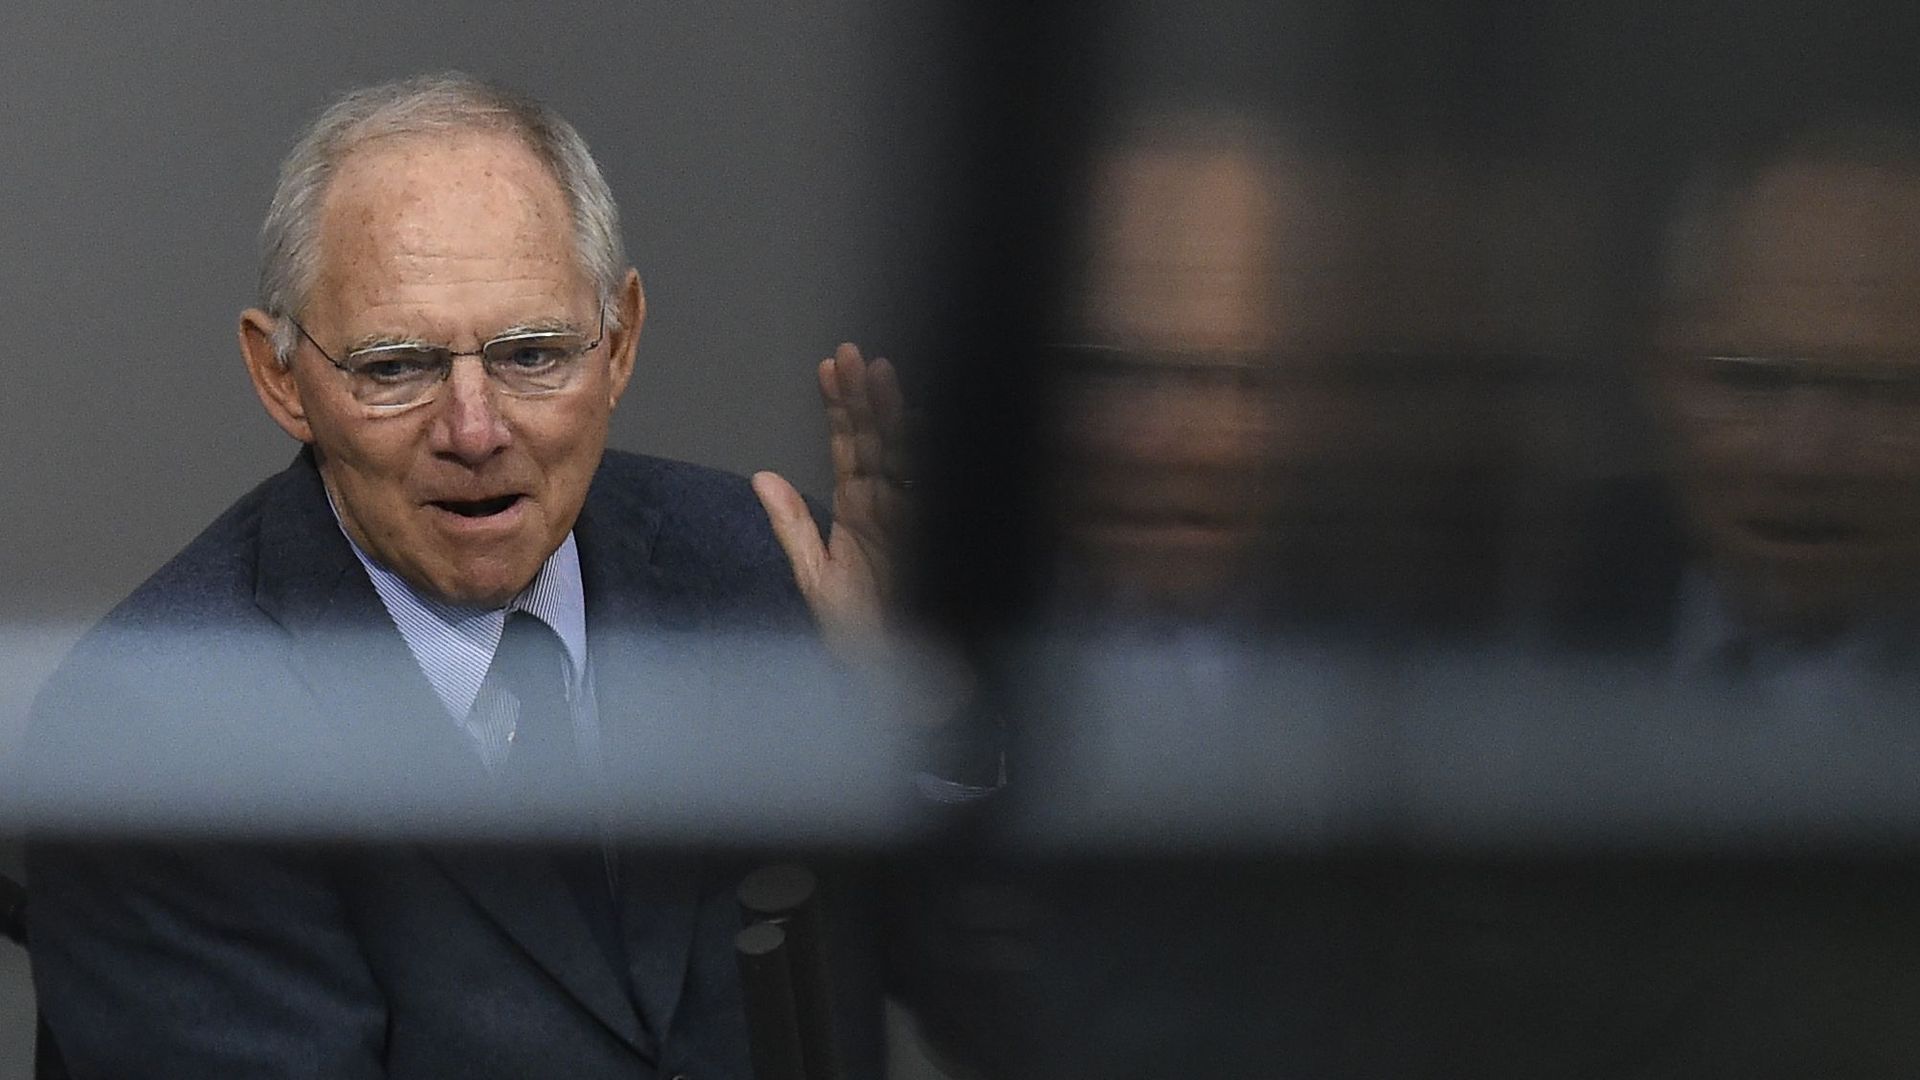 Crise des migrants: Wolfgang Schäuble croit en une solution européenne